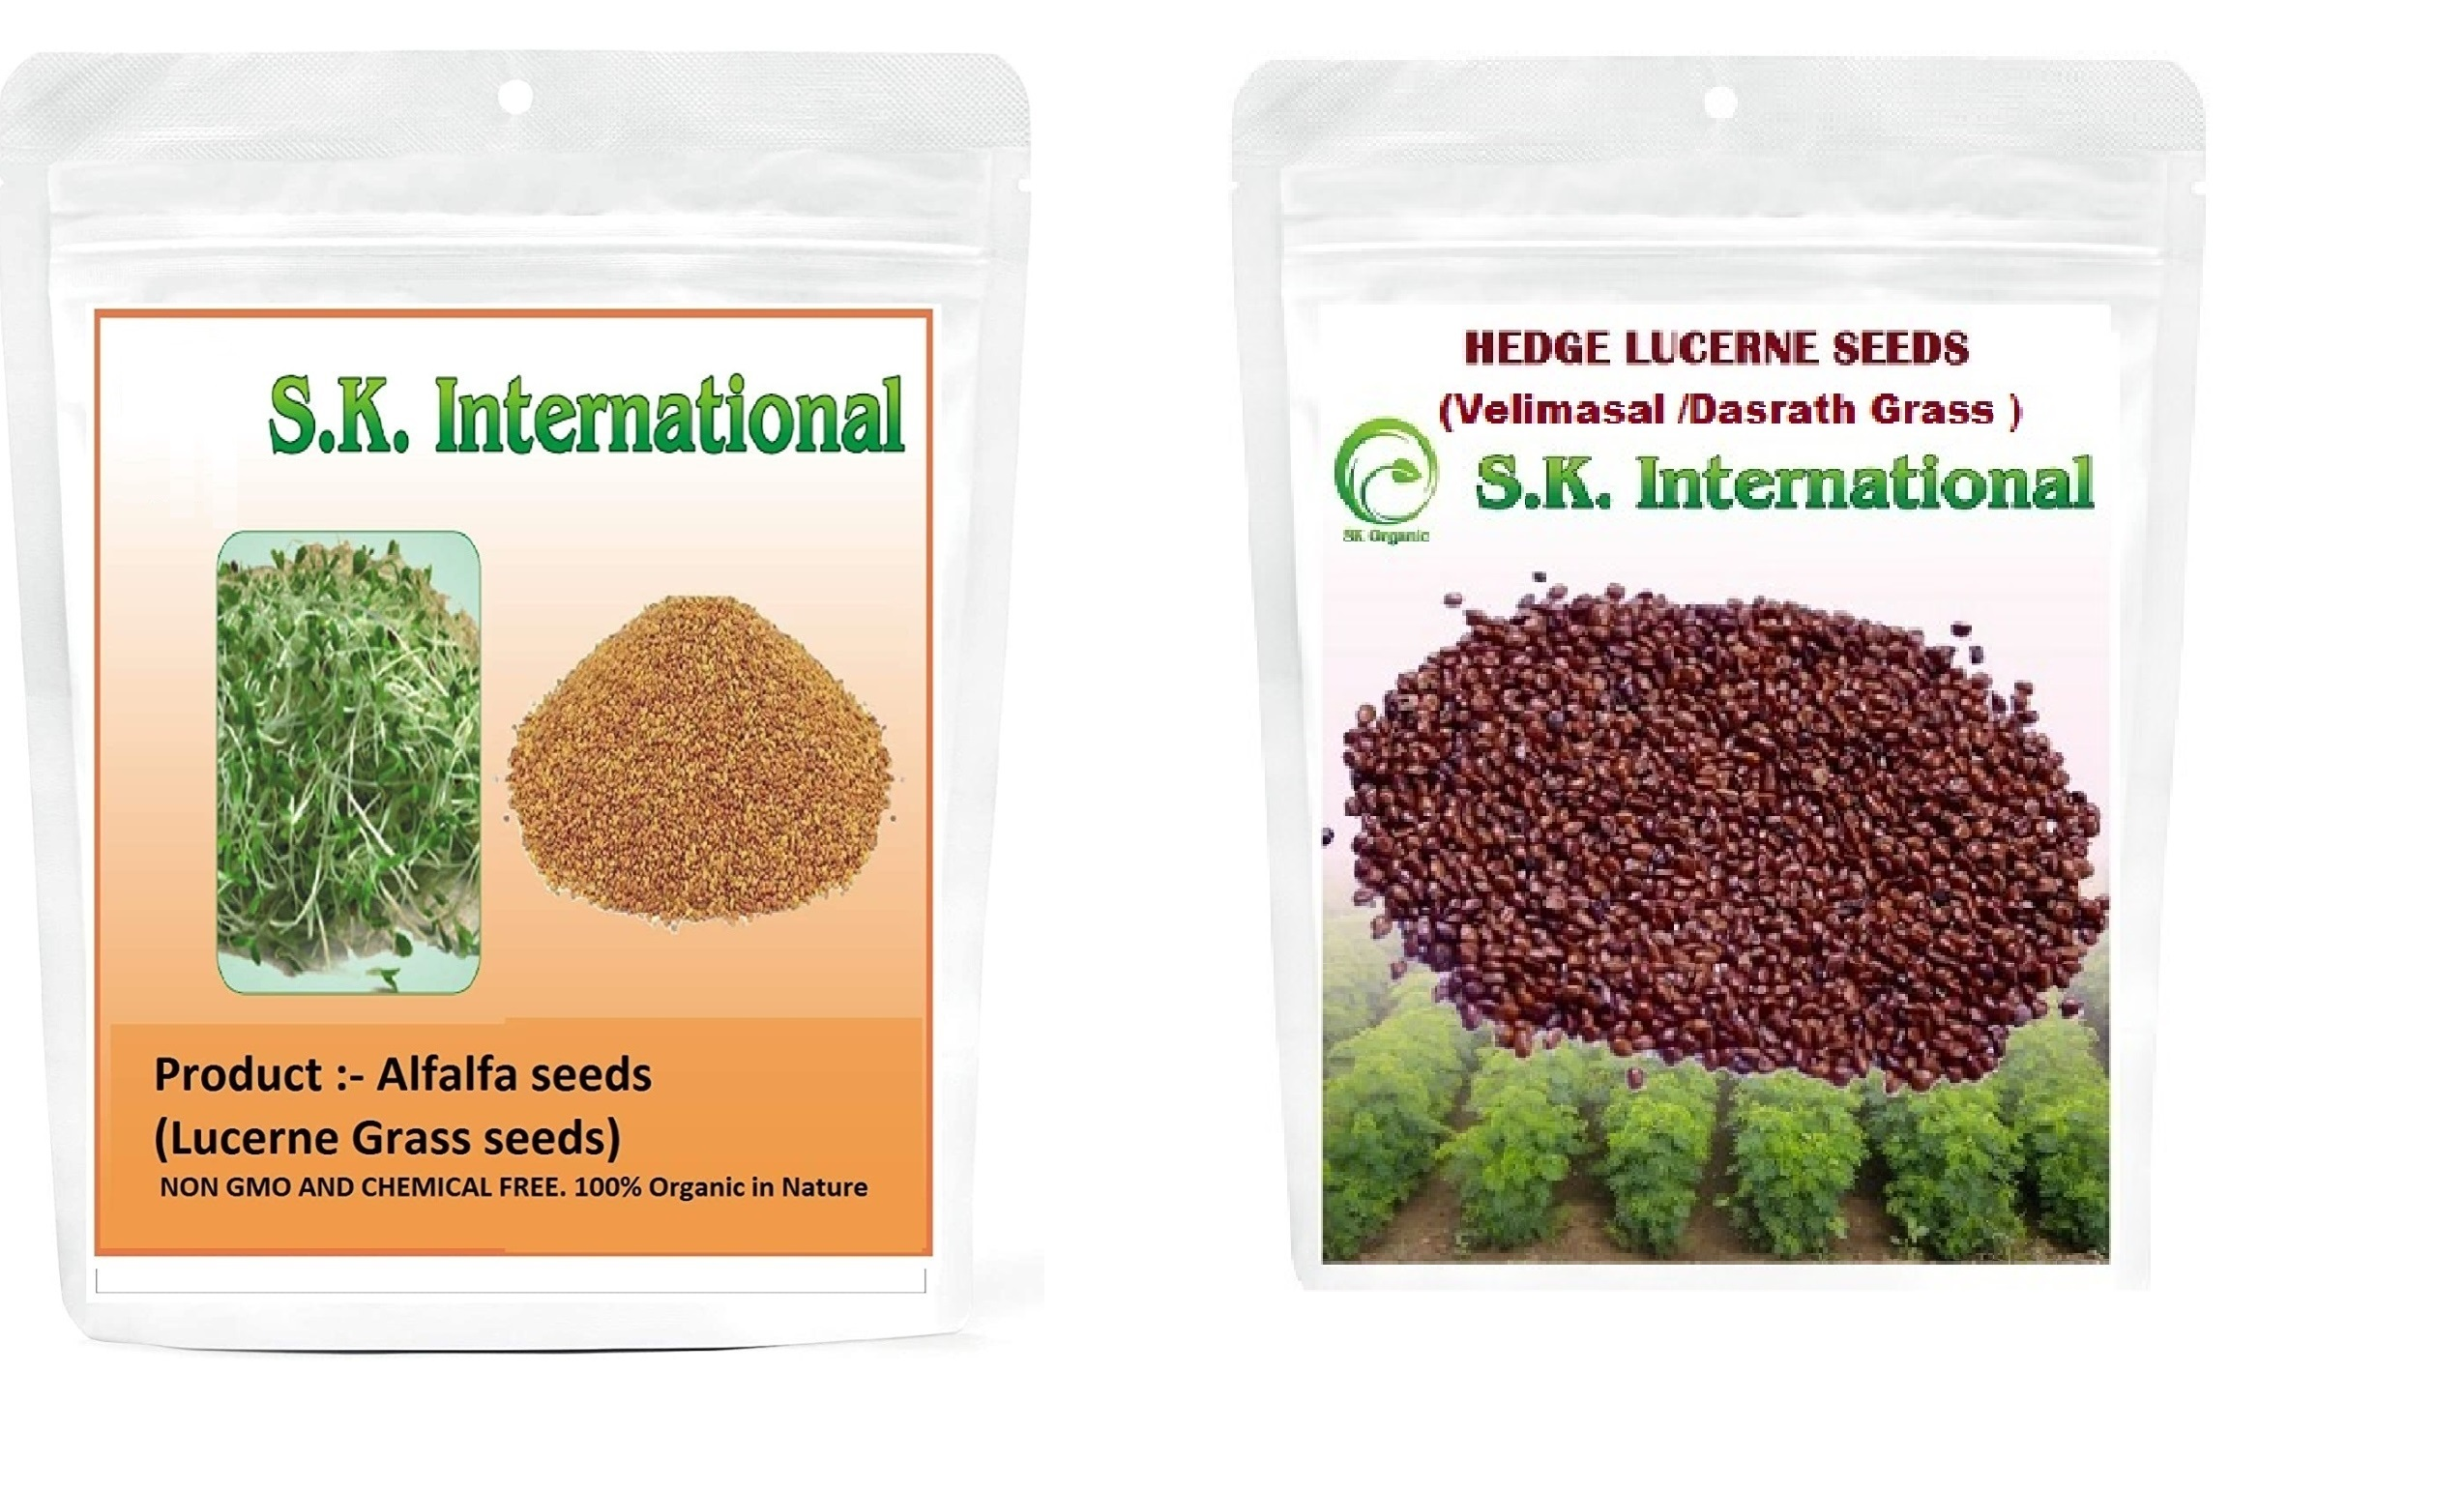 SK ORGANIC Alfalfa Lucerne seeds and Hedge Lucerne seeds (Velimasal/Dasrath) for cattle fodder